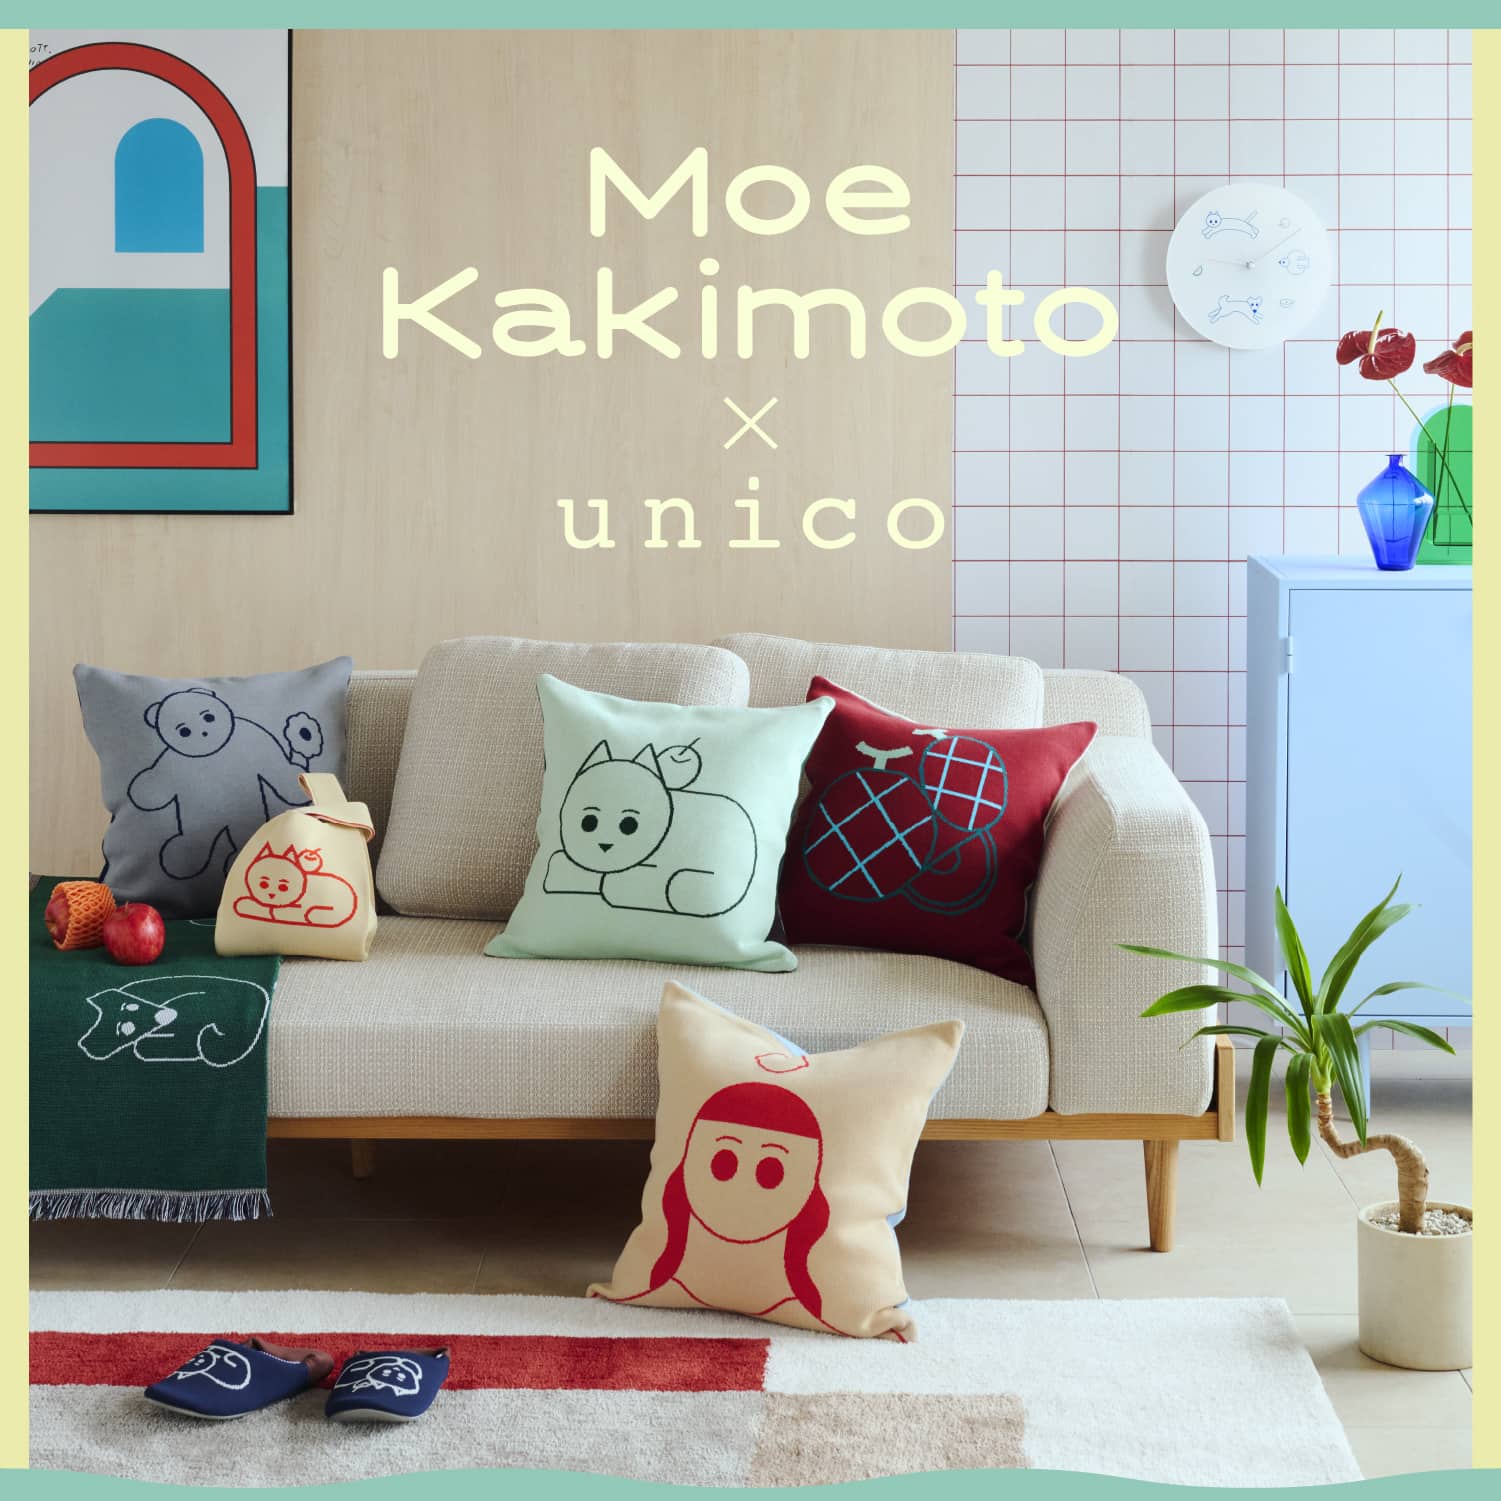 Moe Kakimoto×unico